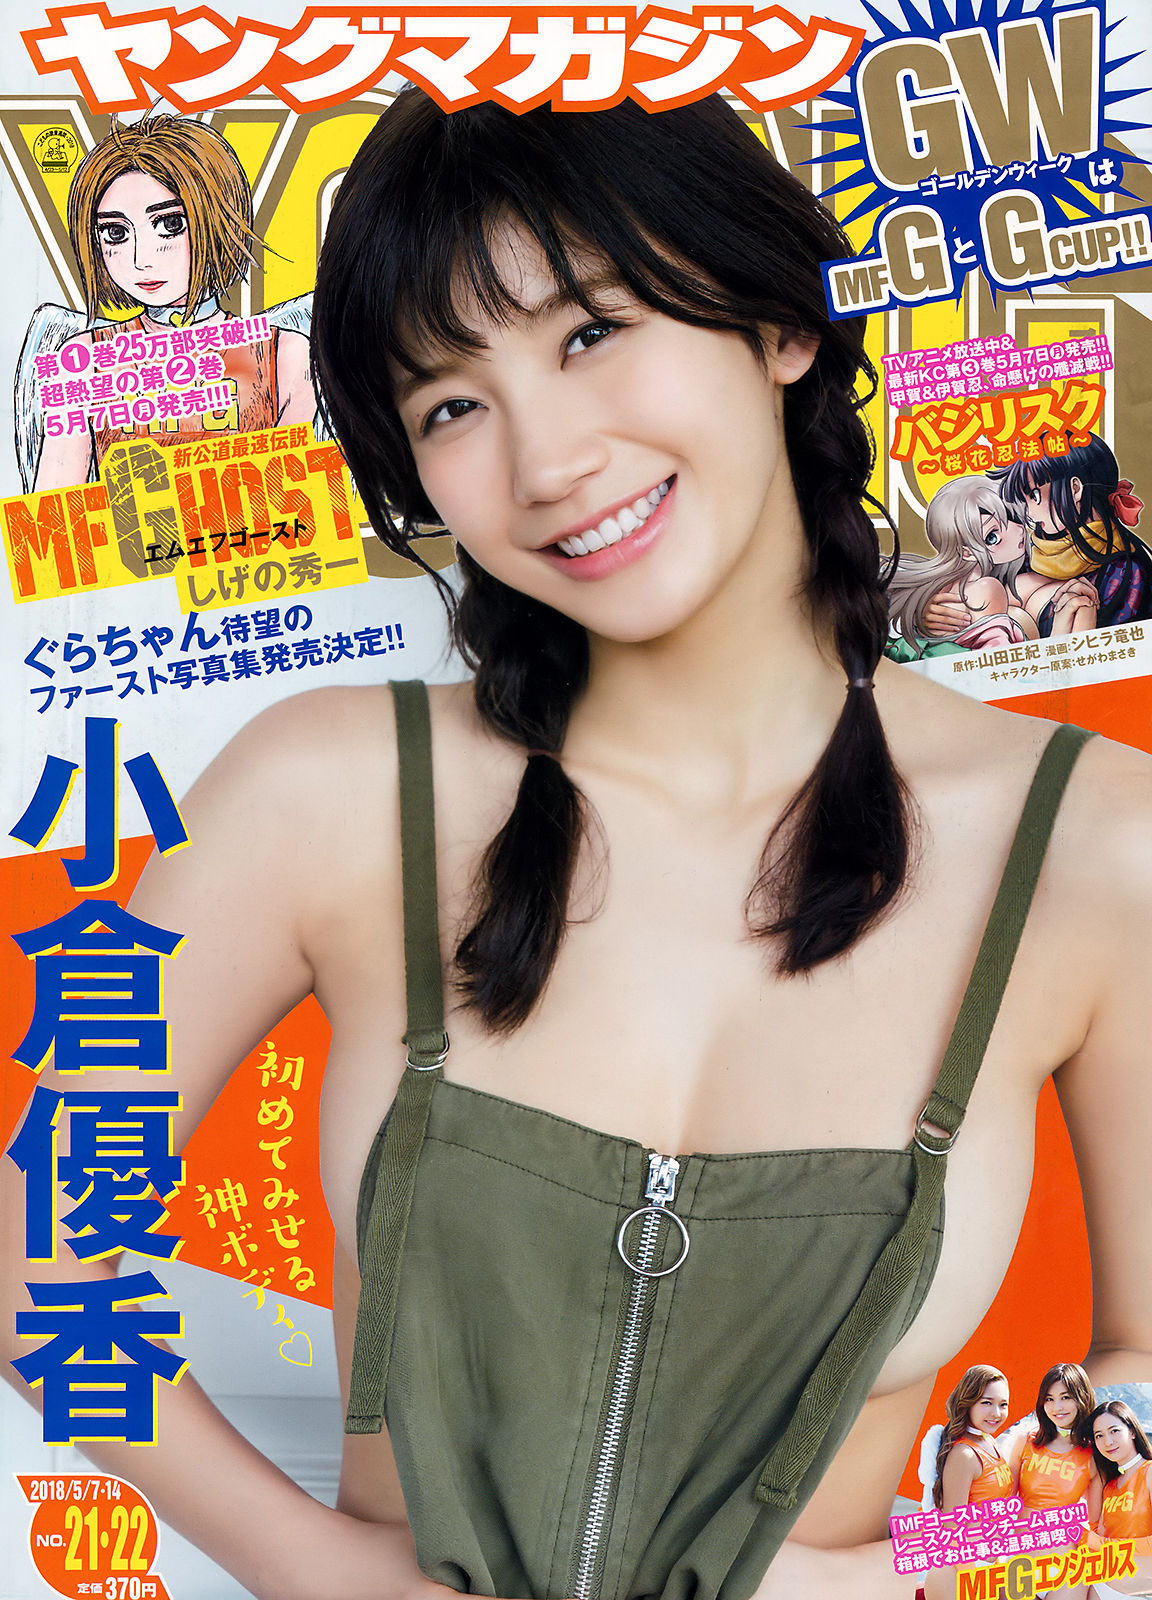 [Young Magazine]日本嫩模:小仓优香(小倉優香)高品质壁纸图片珍藏版(12P)